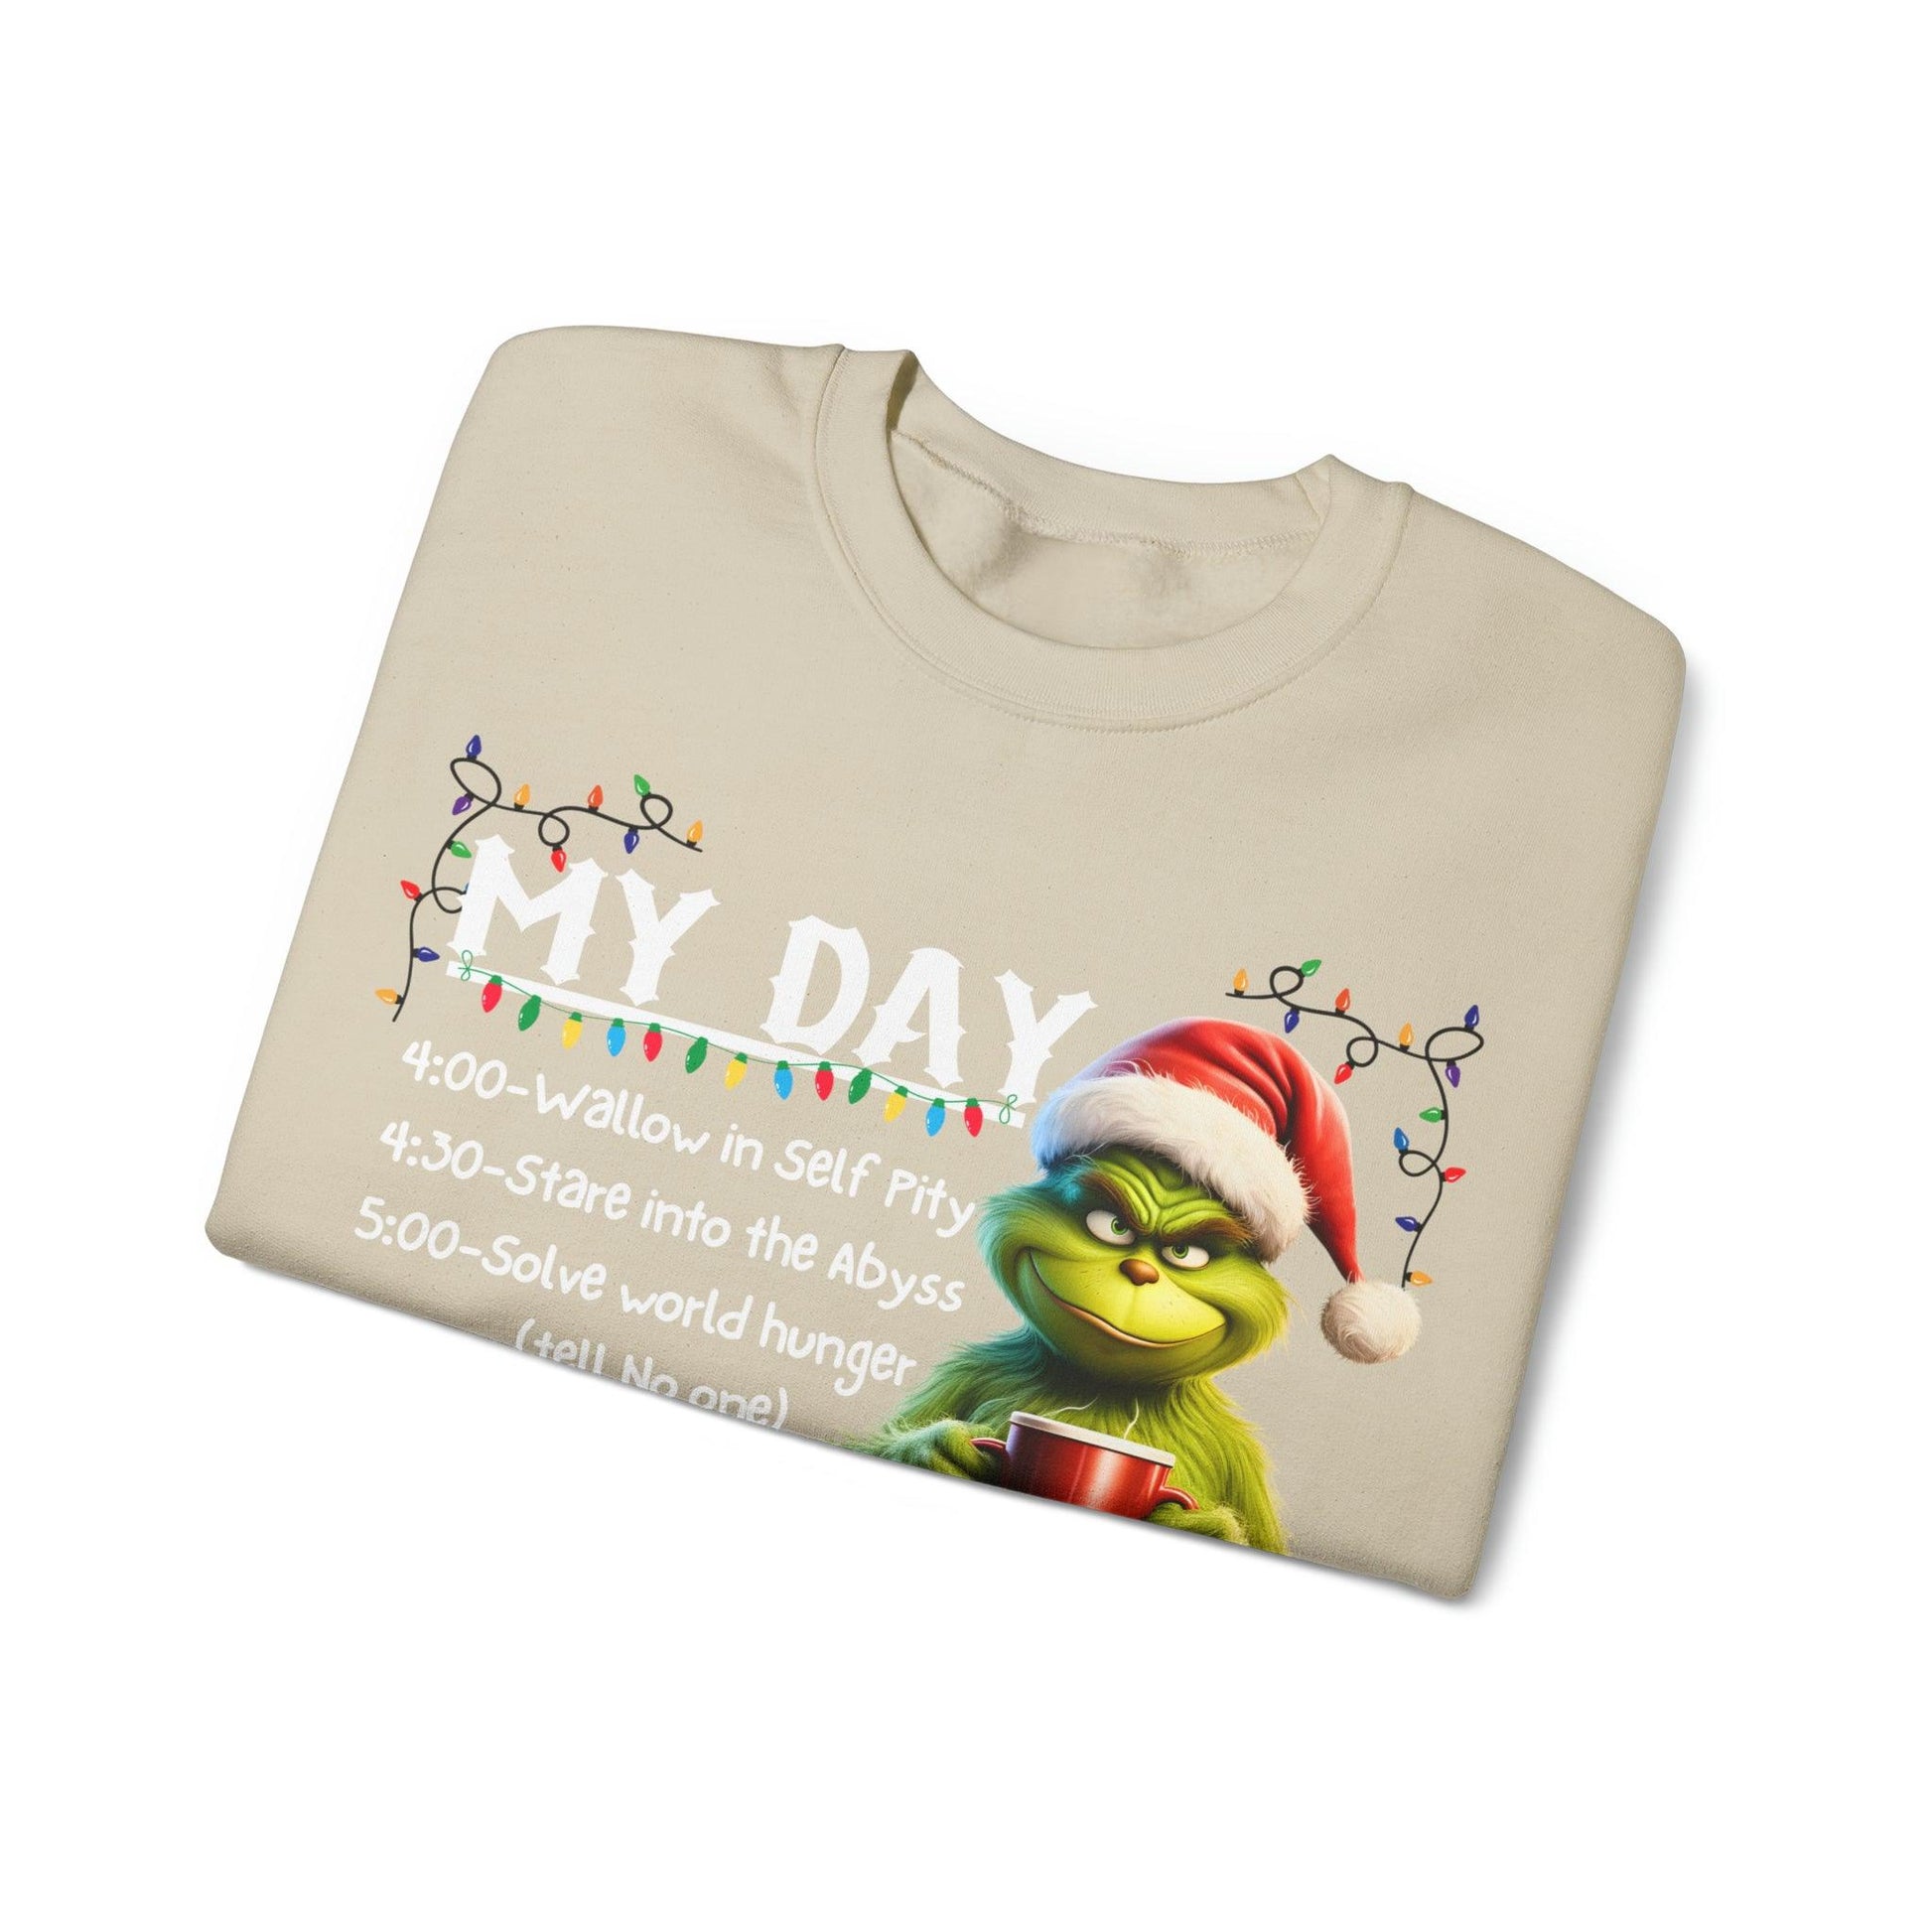 My Day Schedule I'M Booked Funny Christmas Sweatshirt Grinch Sweatshirt - Giftsmojo